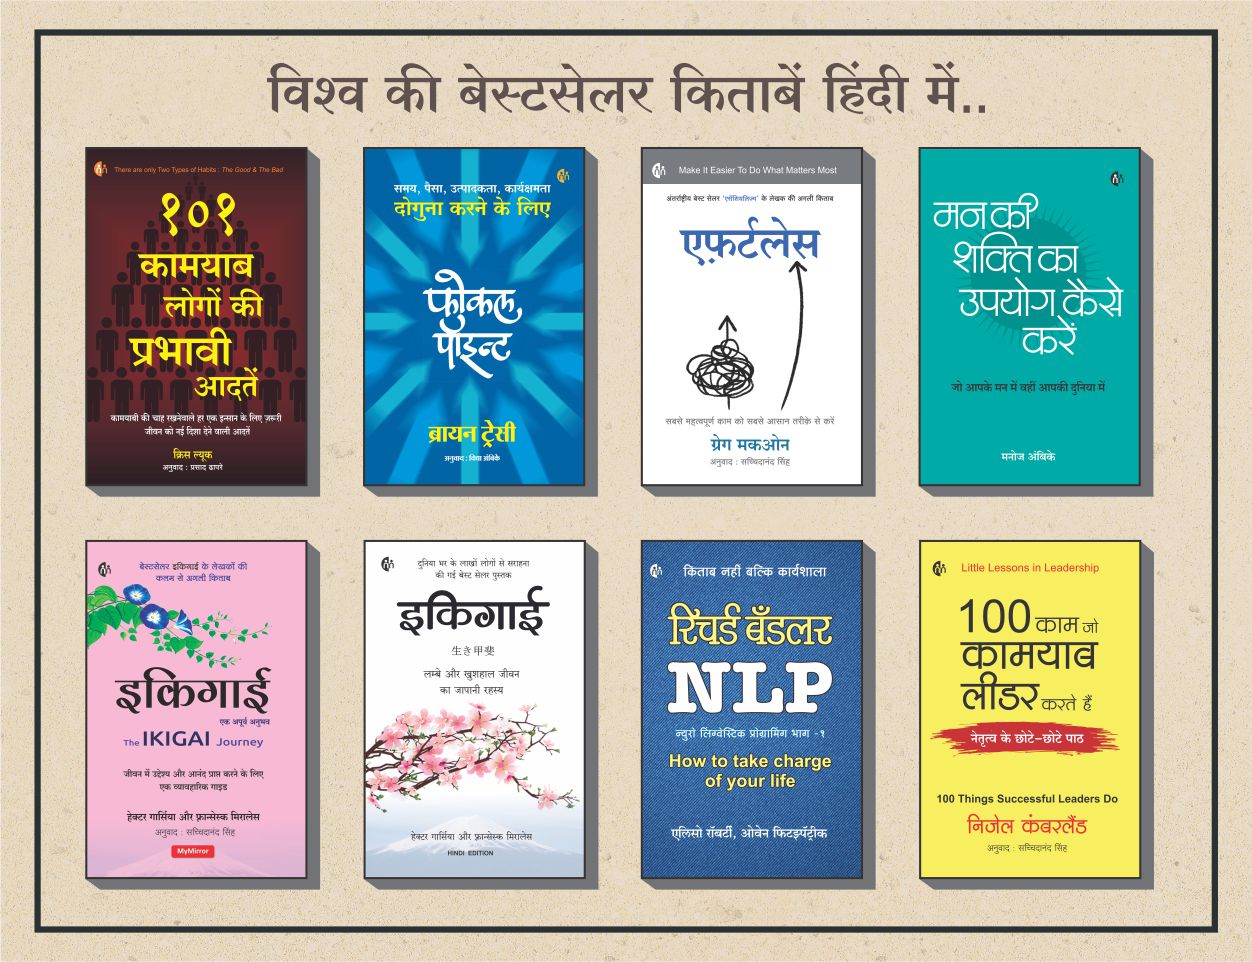 8 हिंदी बेस्टसेलर किताबों का संच (8 Bestseller Hindi Books)